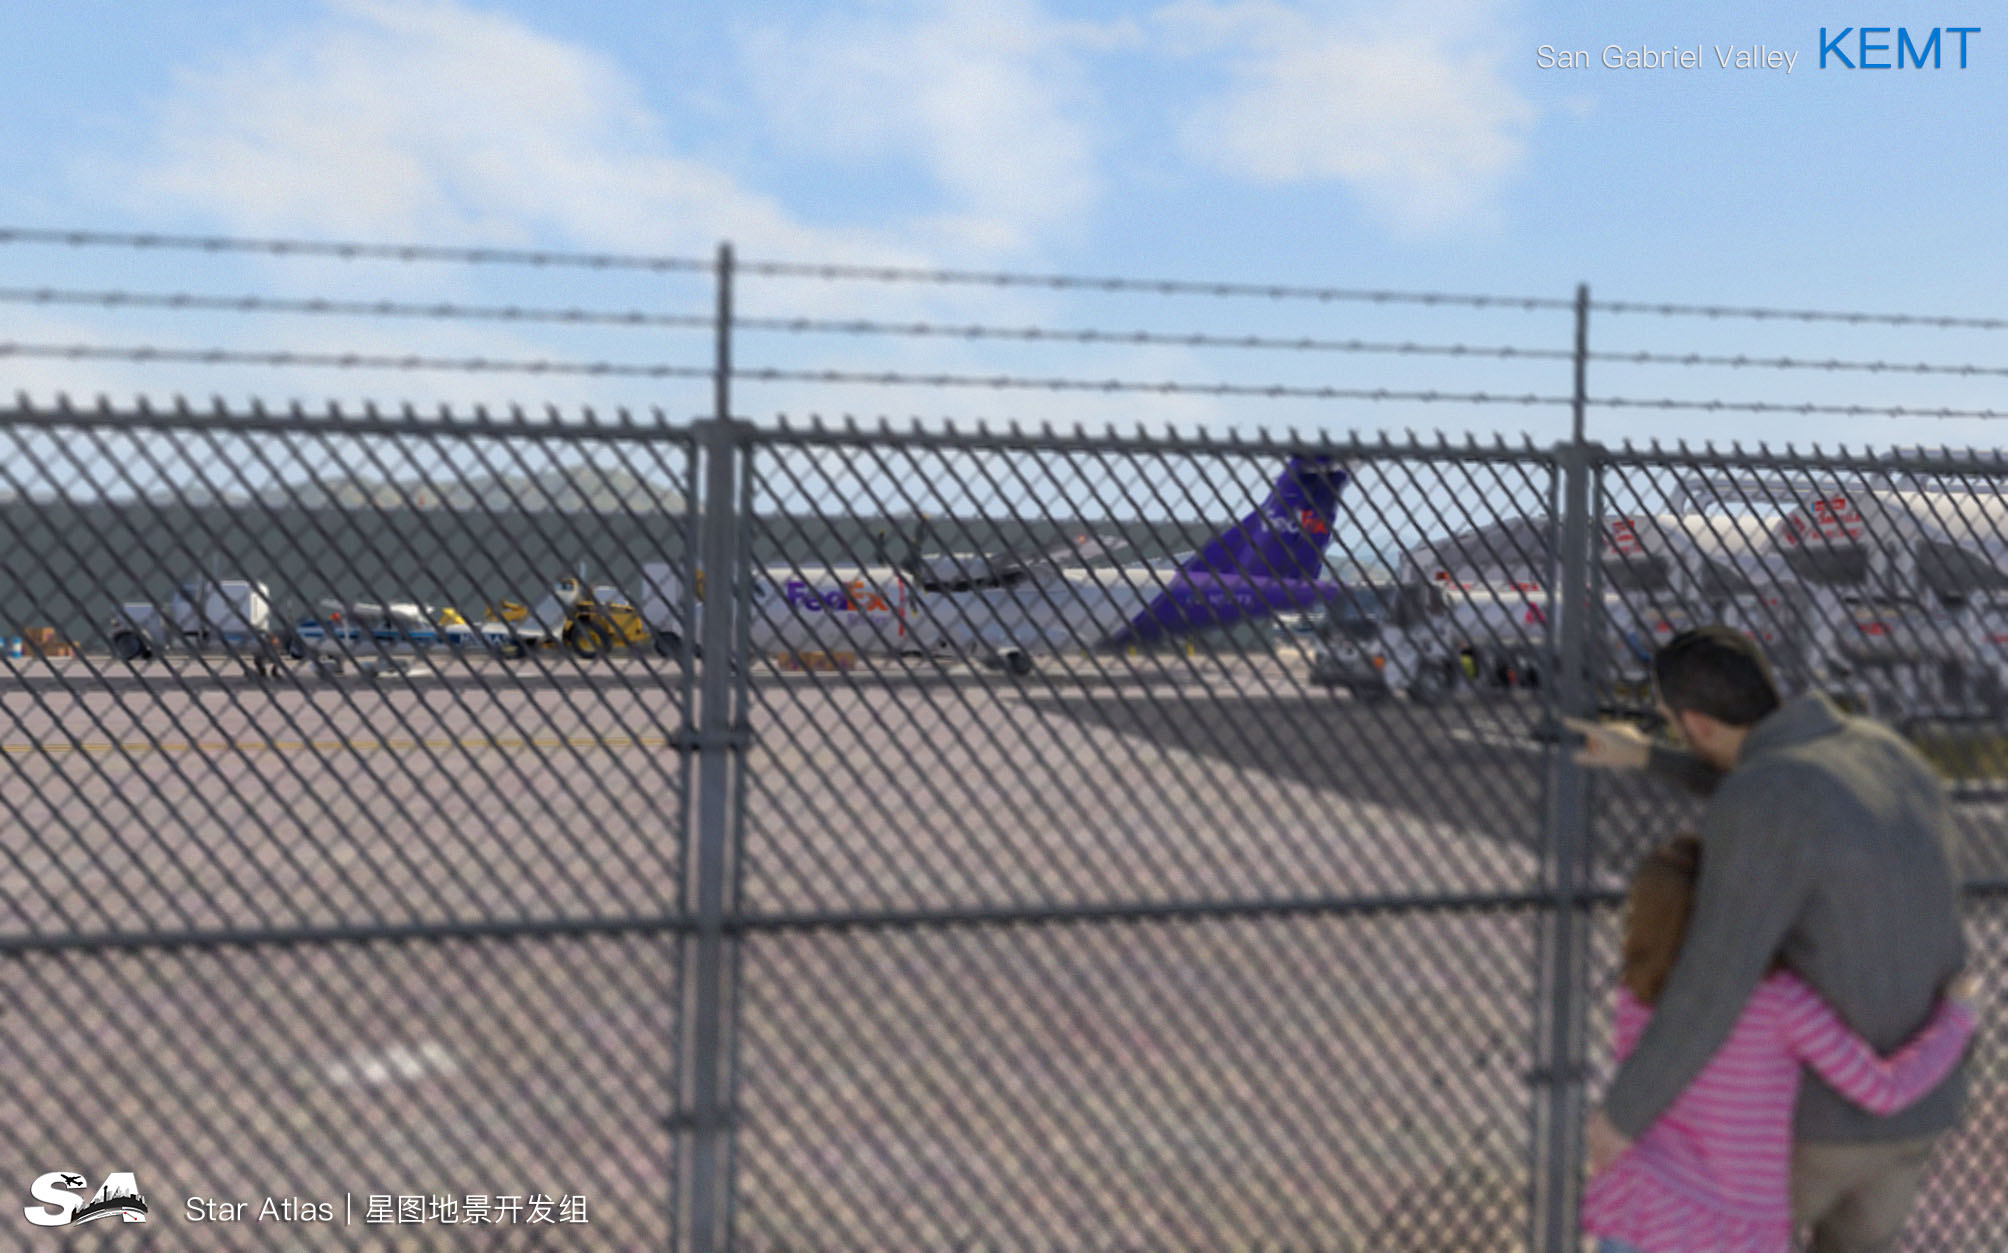 【X-Plane】KEMT-圣盖博谷机场 HD 1.0-6904 